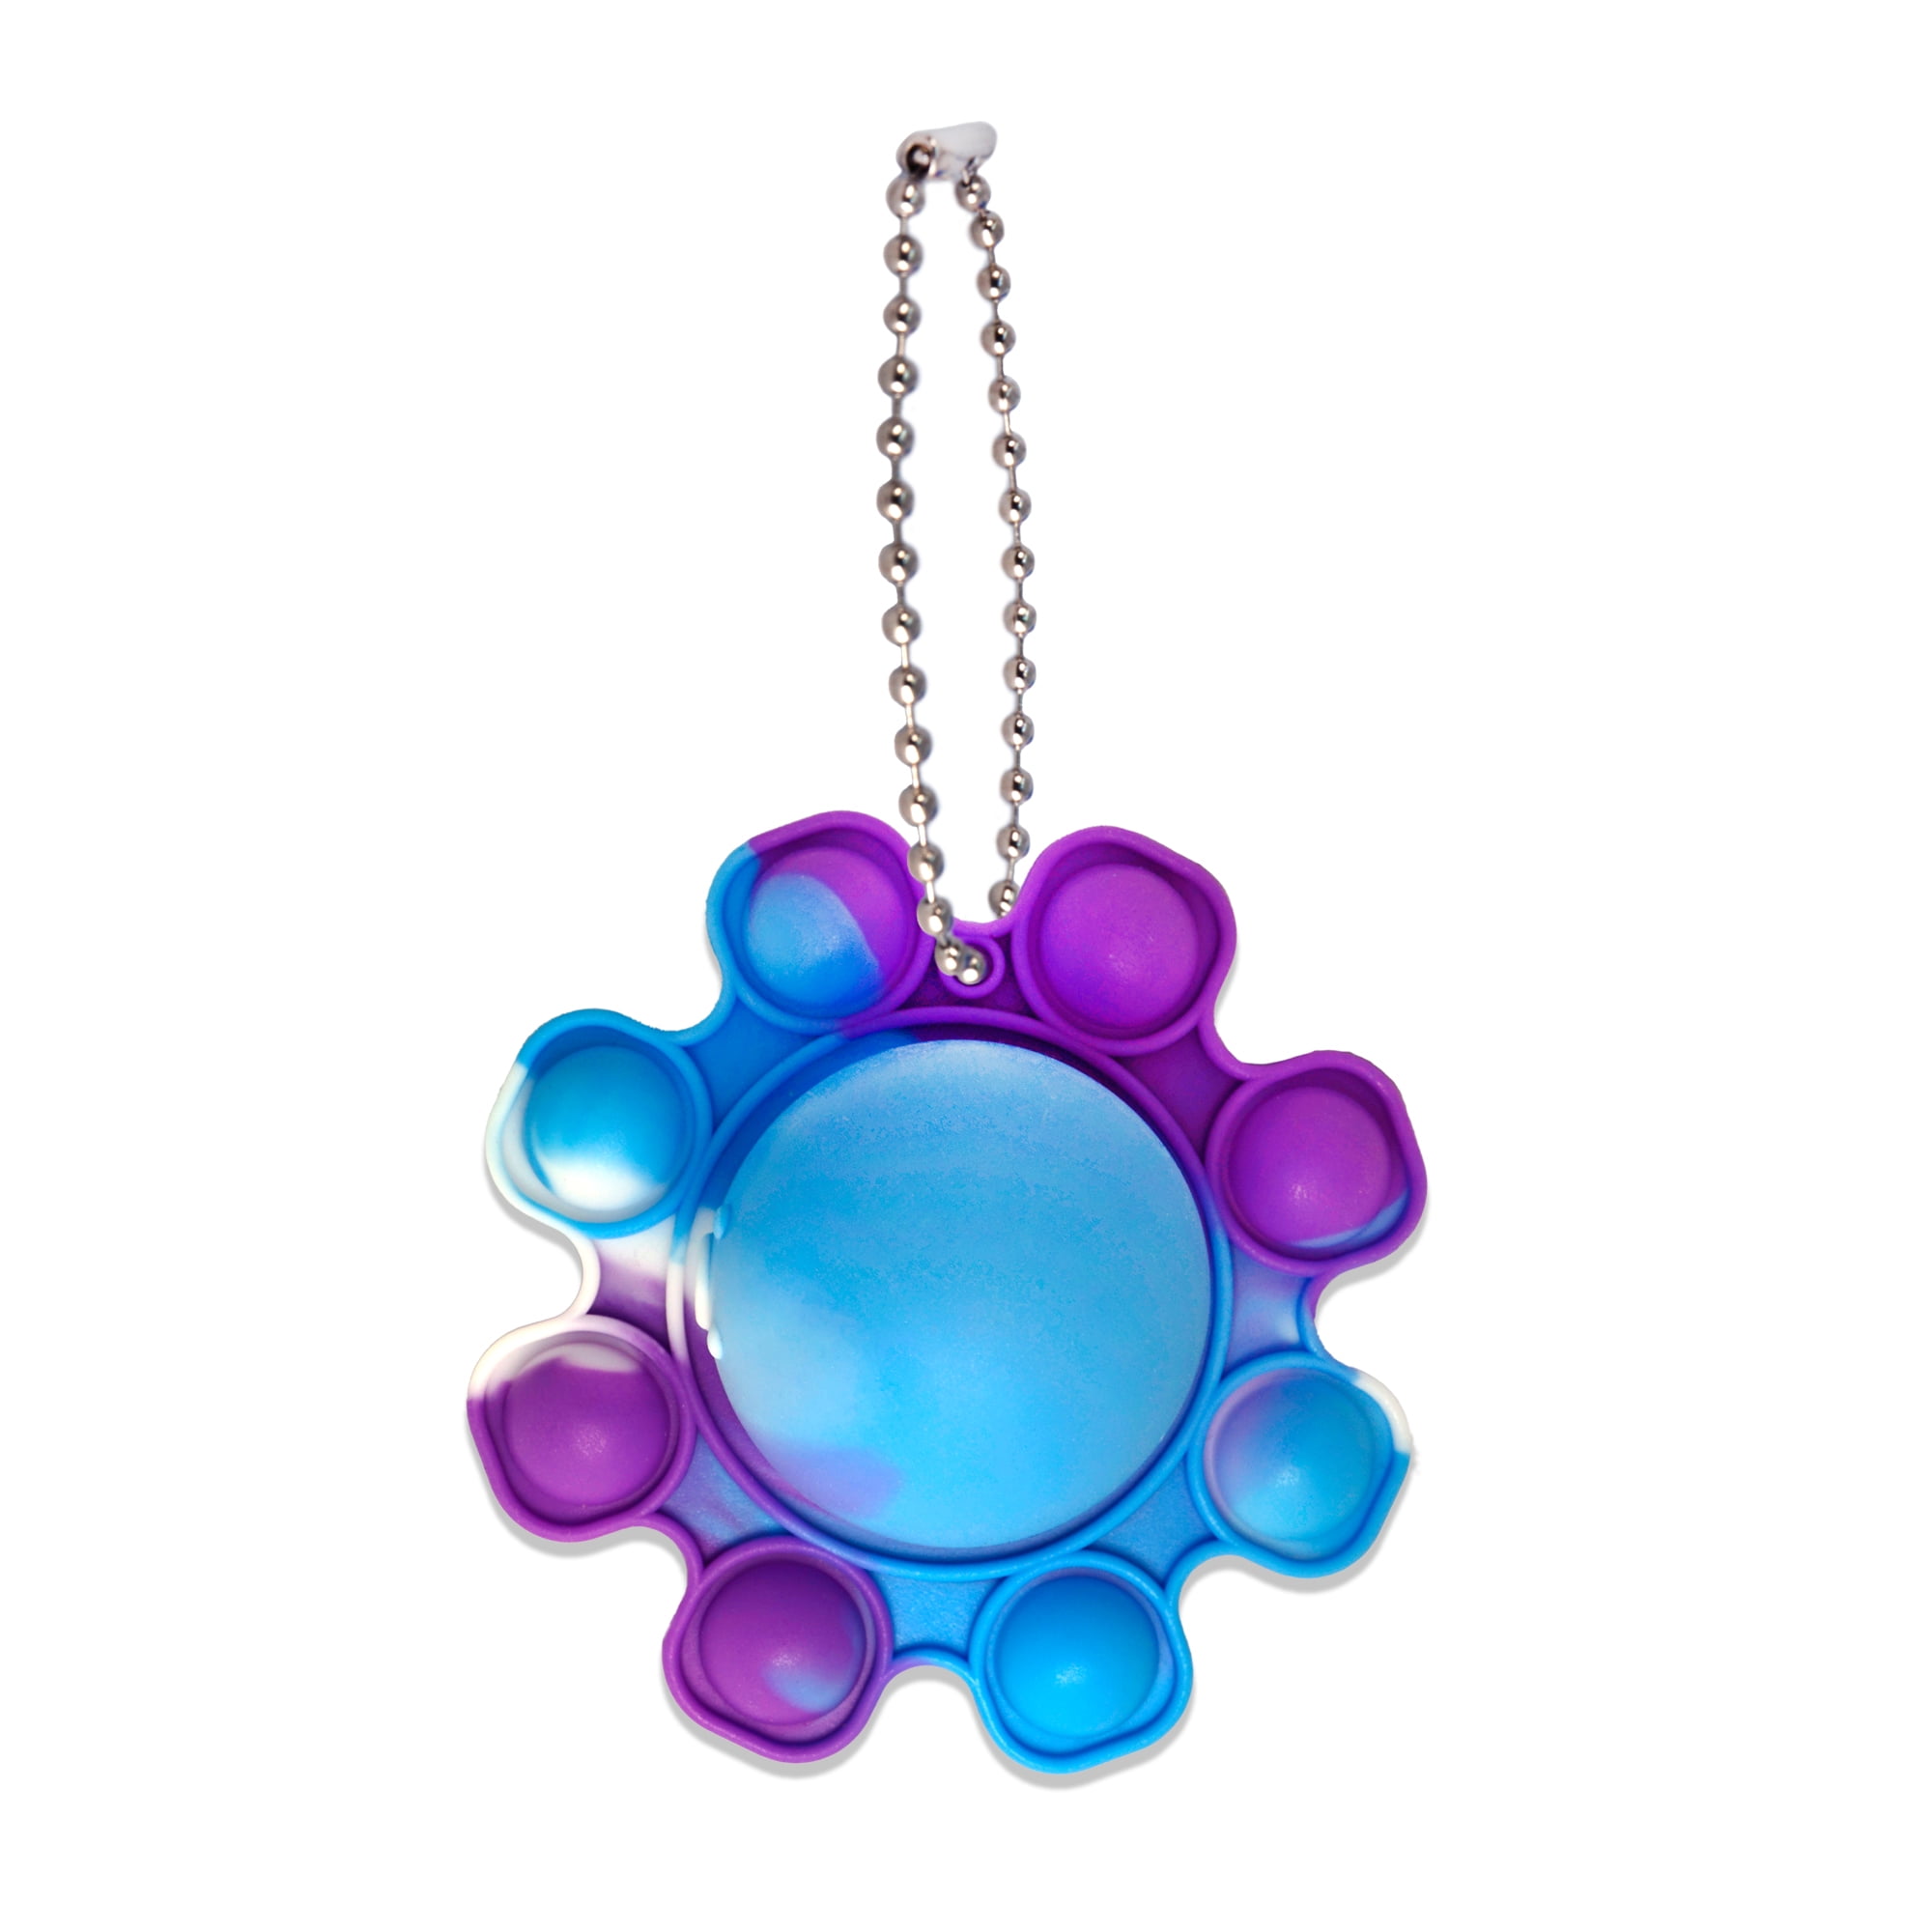 Pop Poppers ©Disney Stitch Fidget Toy Keychain – Blue